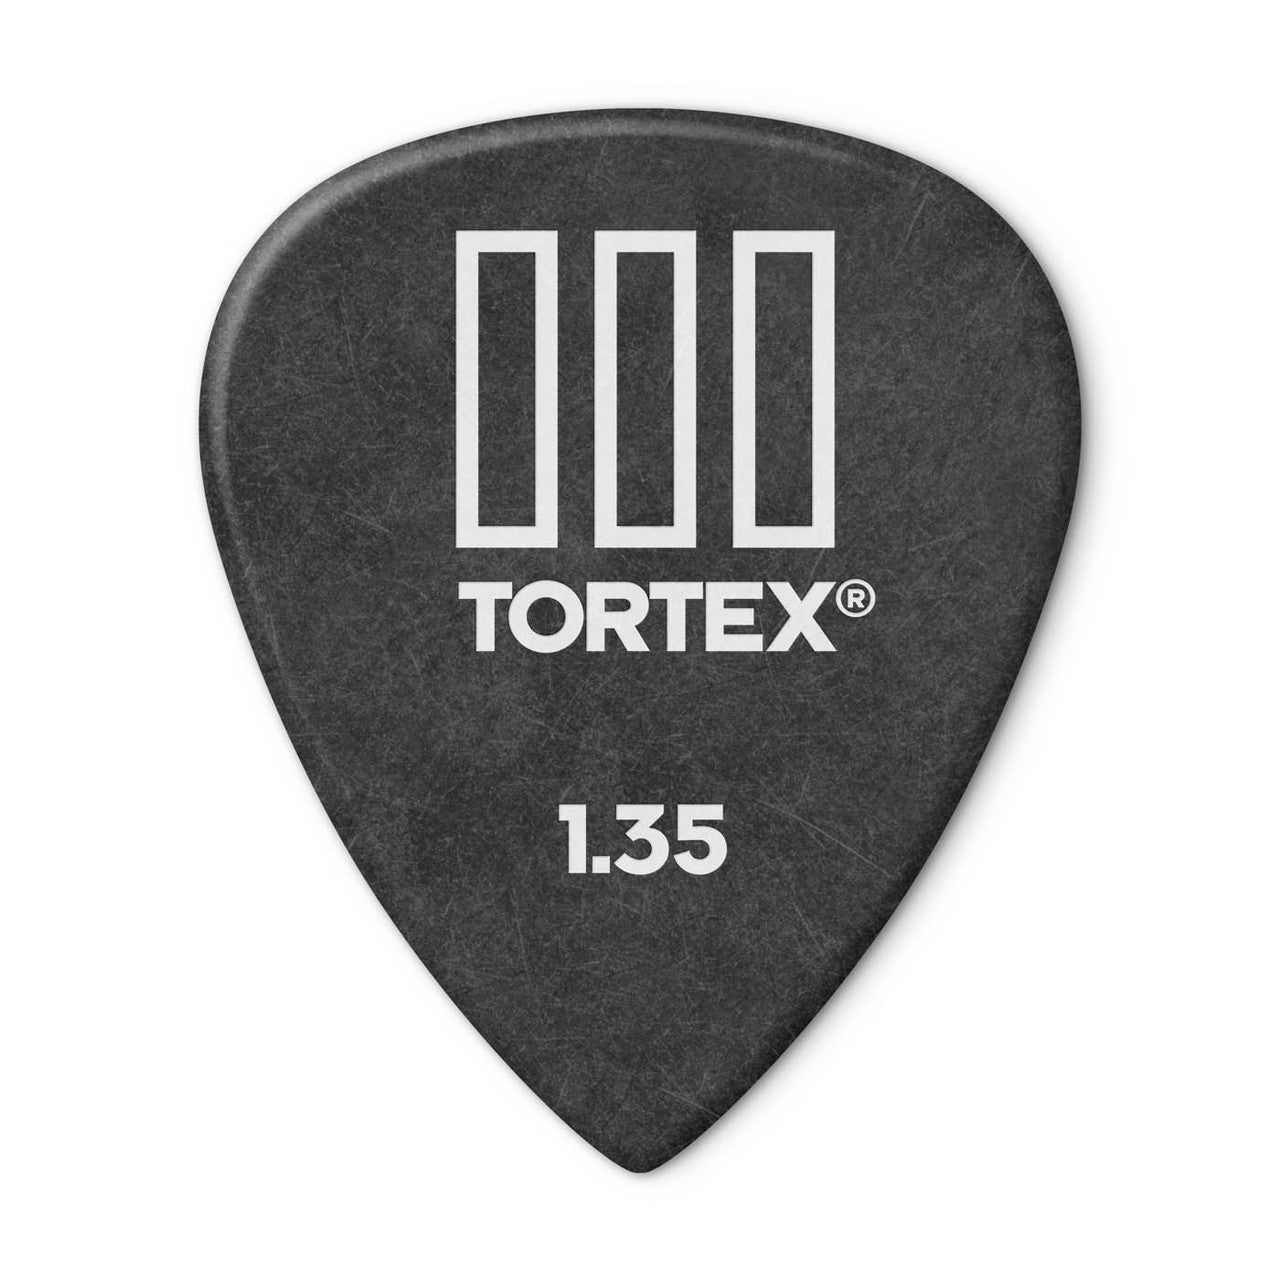 Dunlop Tortex TIII Pick - 1.35mm